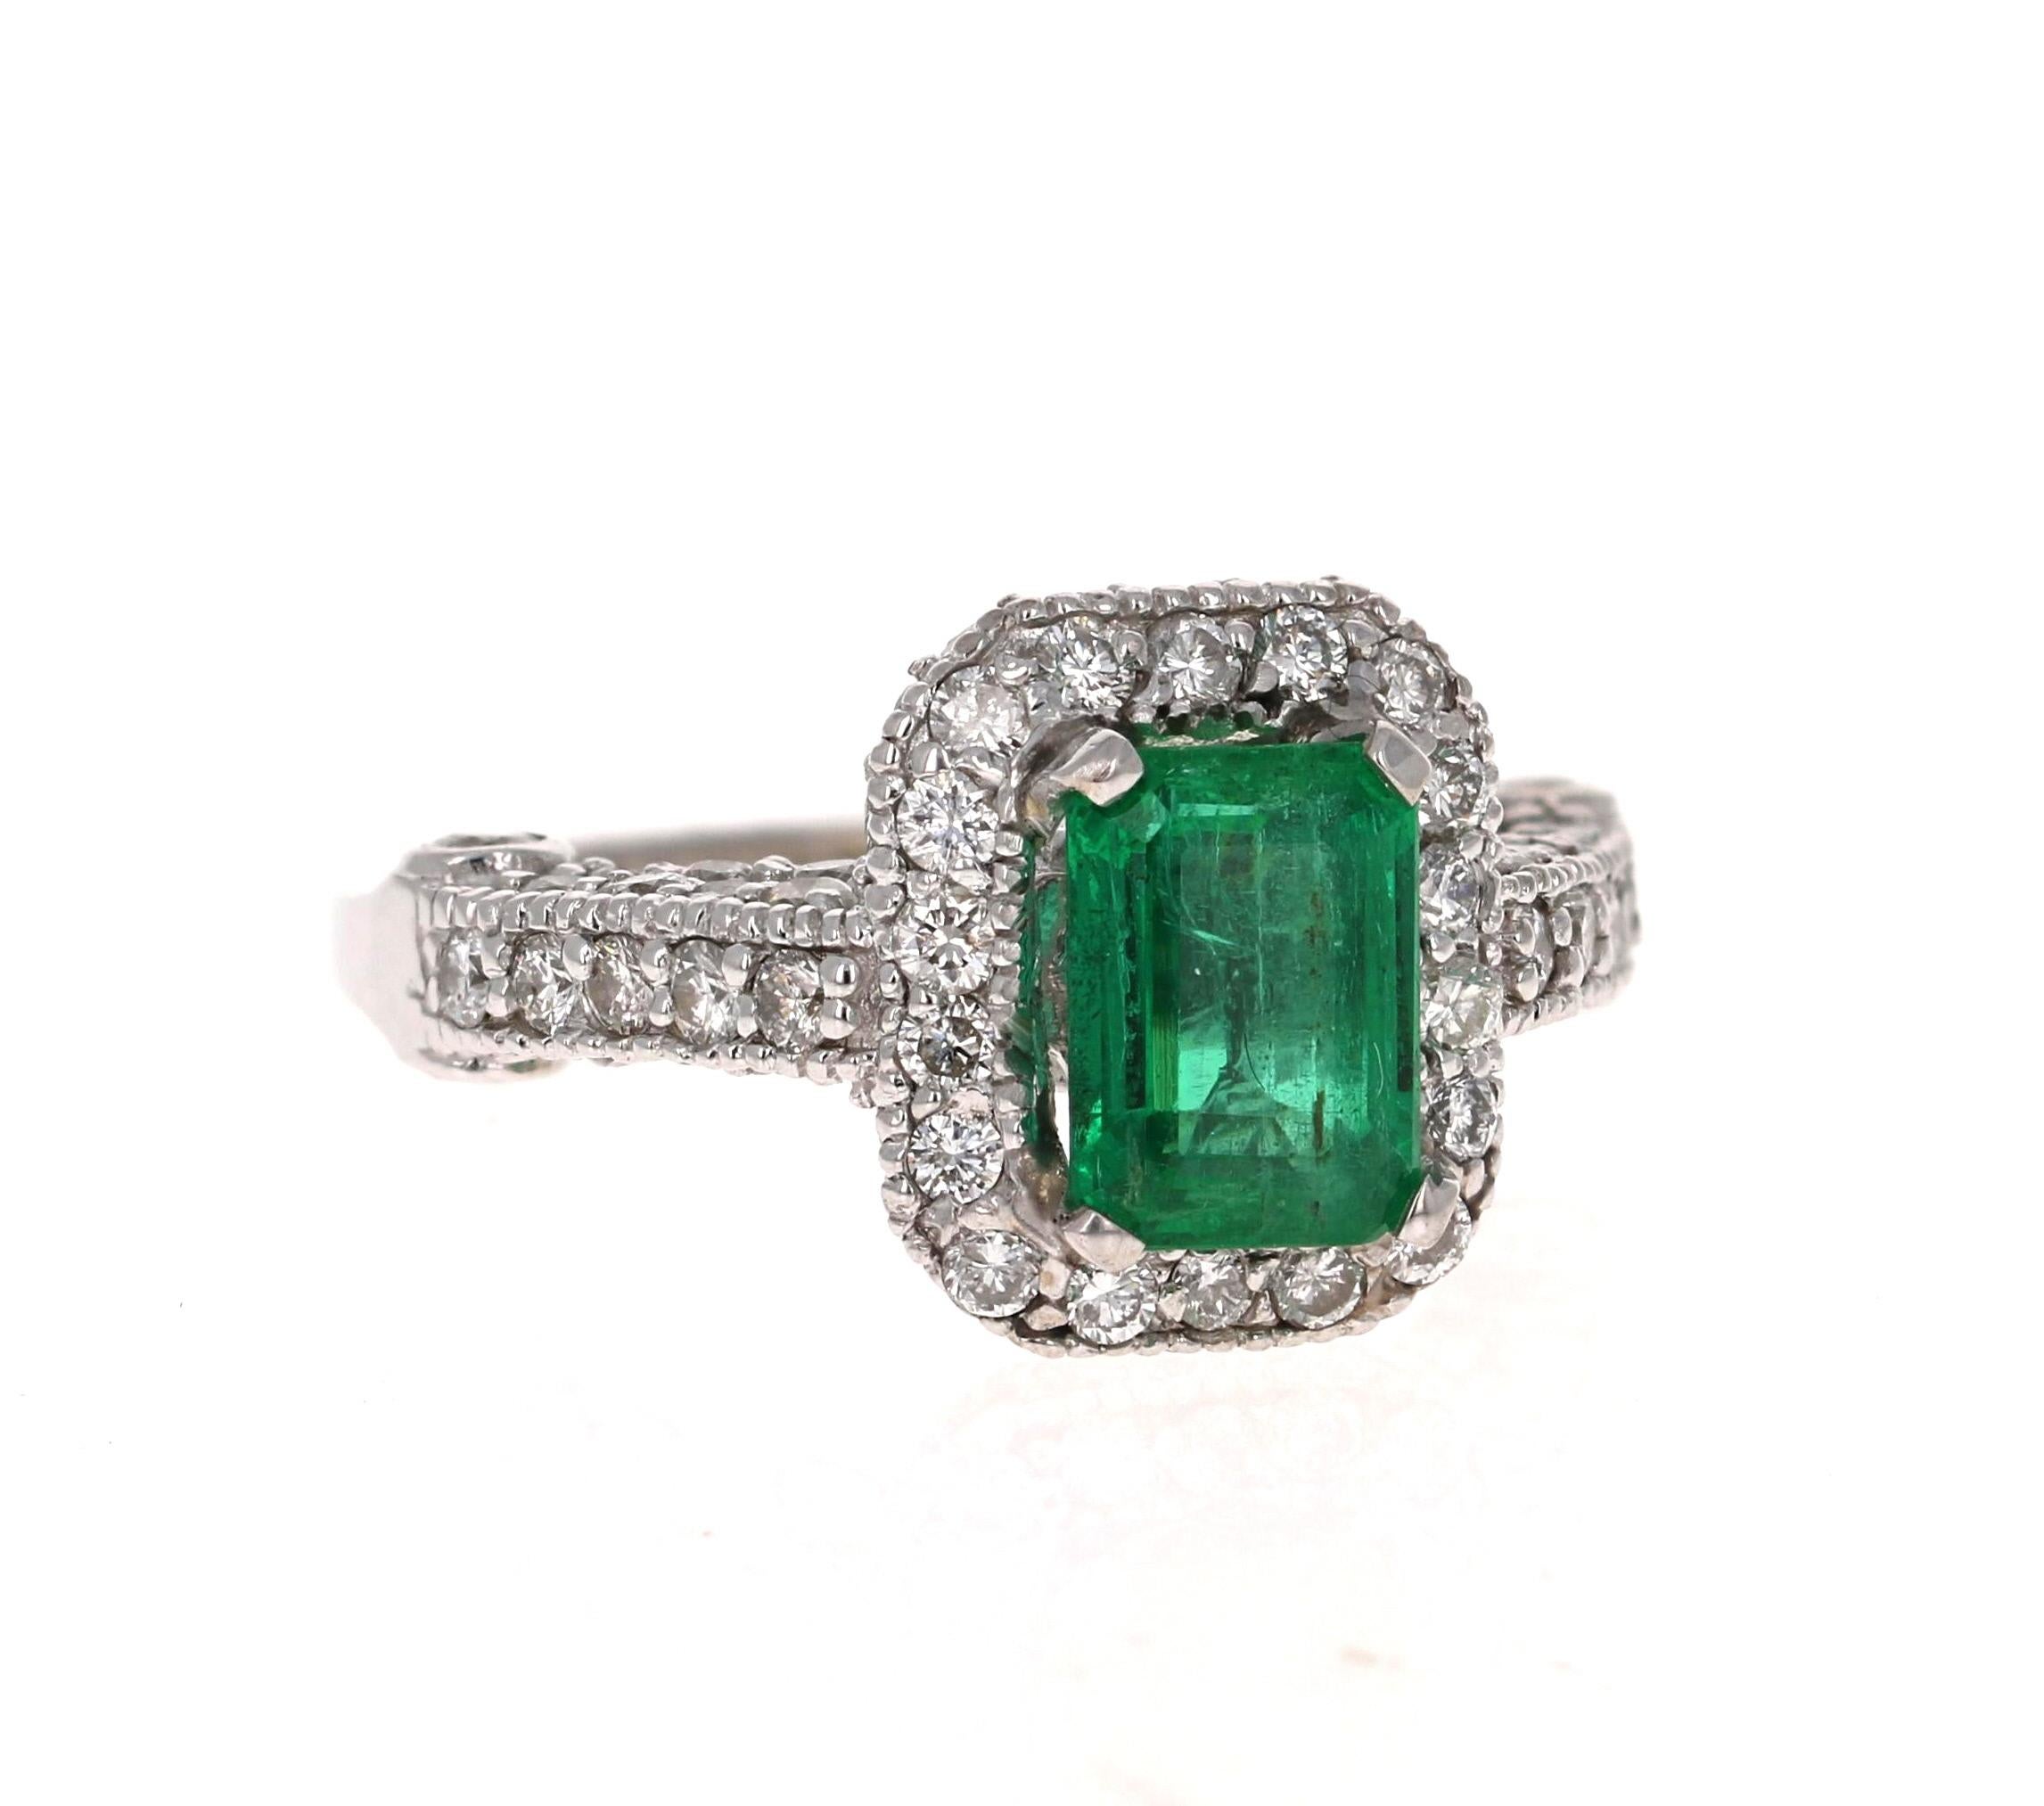 Atemberaubende Vintage inspiriert Smaragd Schliff Smaragd Diamant Ring! 

Dieser Smaragdring ist absolut wunderschön. In der Mitte befindet sich ein Smaragd mit einem Gewicht von 1,47 Karat und einer Größe von ca. 6 mm x 8 mm.  Der Smaragd ist